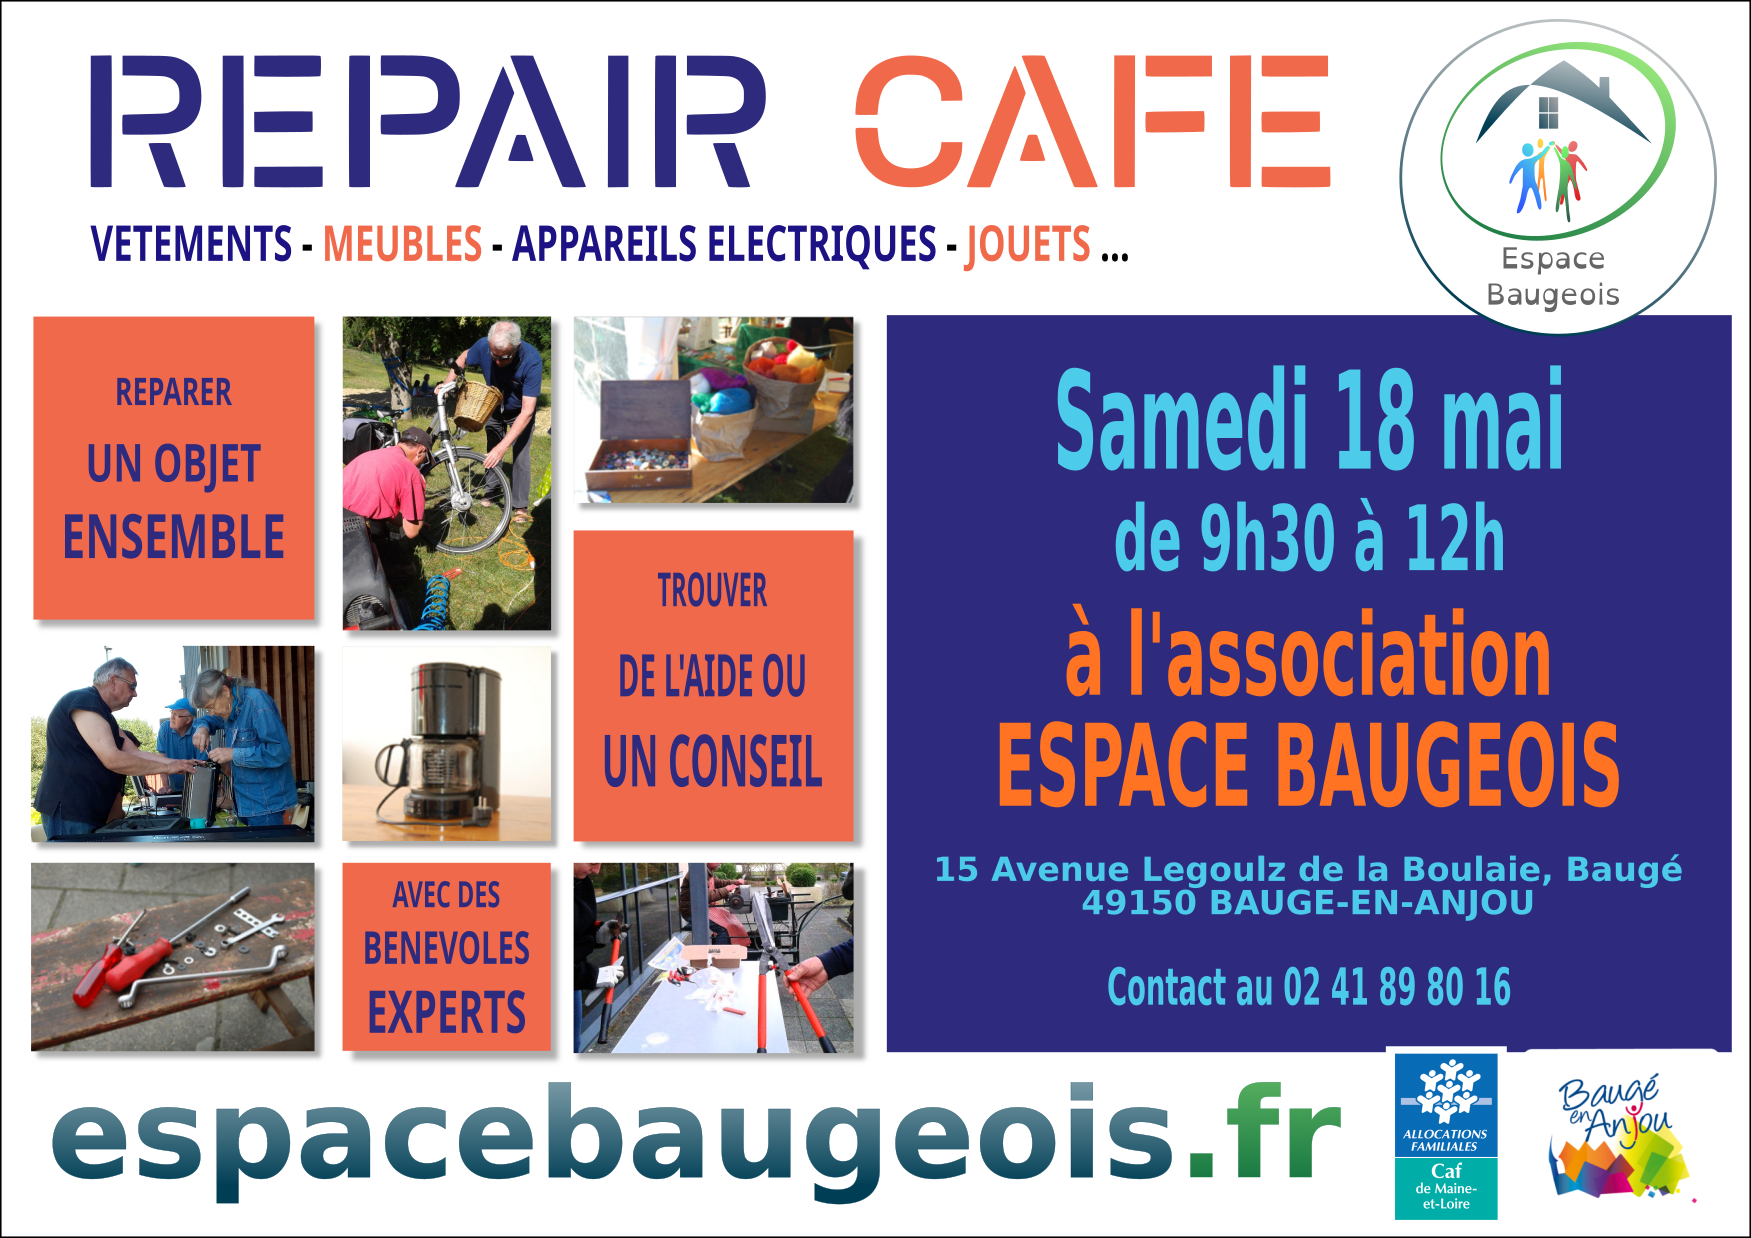 Le Repair Café, c'est samedi 18 mai, dans les locaux de l'association Espace Baugeois